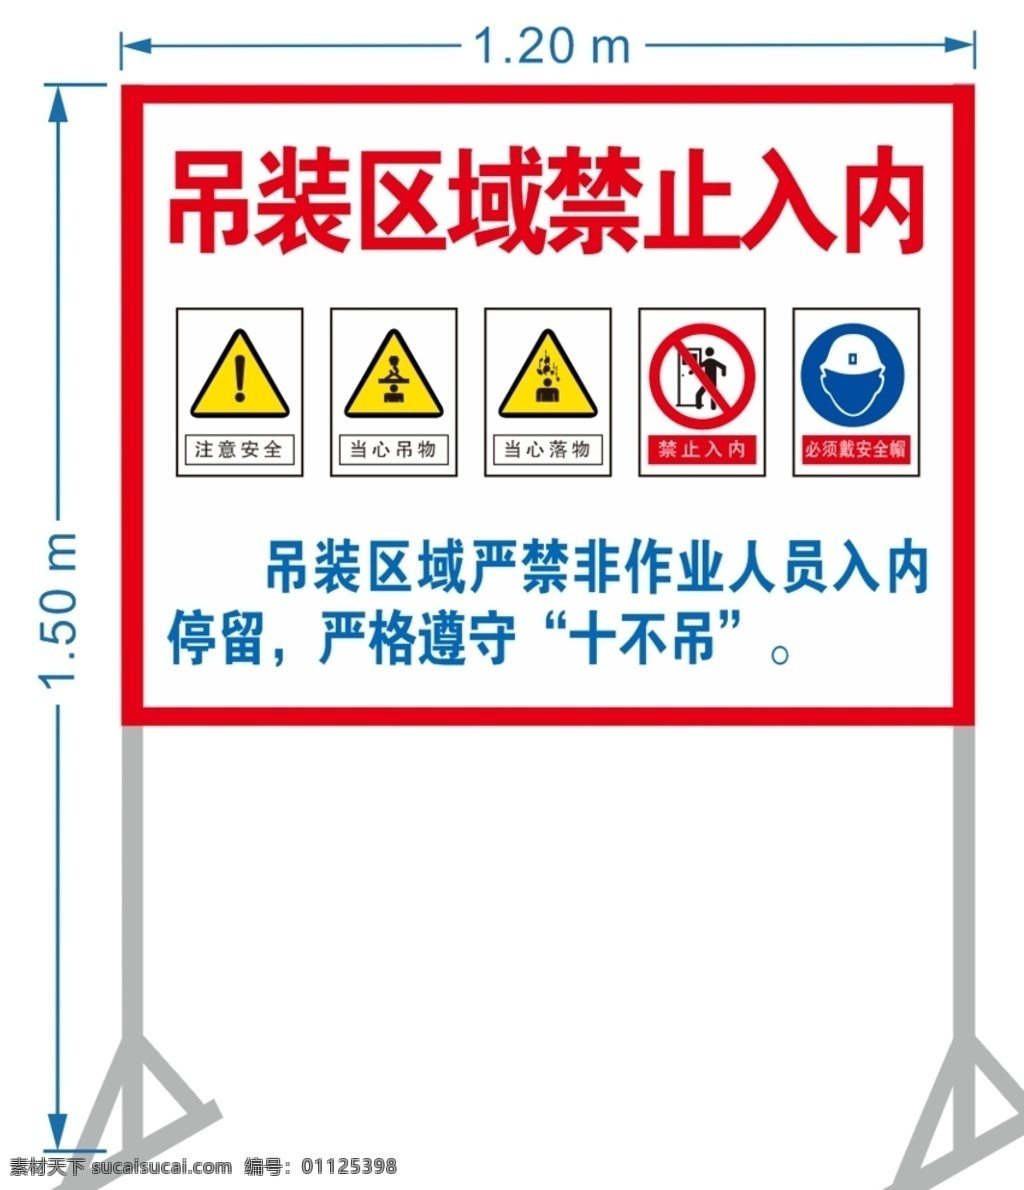 吊装 区域 禁止 入 内 安全提示标志 警告标志 危险标志 提示标志 注意安全 标志图标 公共标识标志 加油站